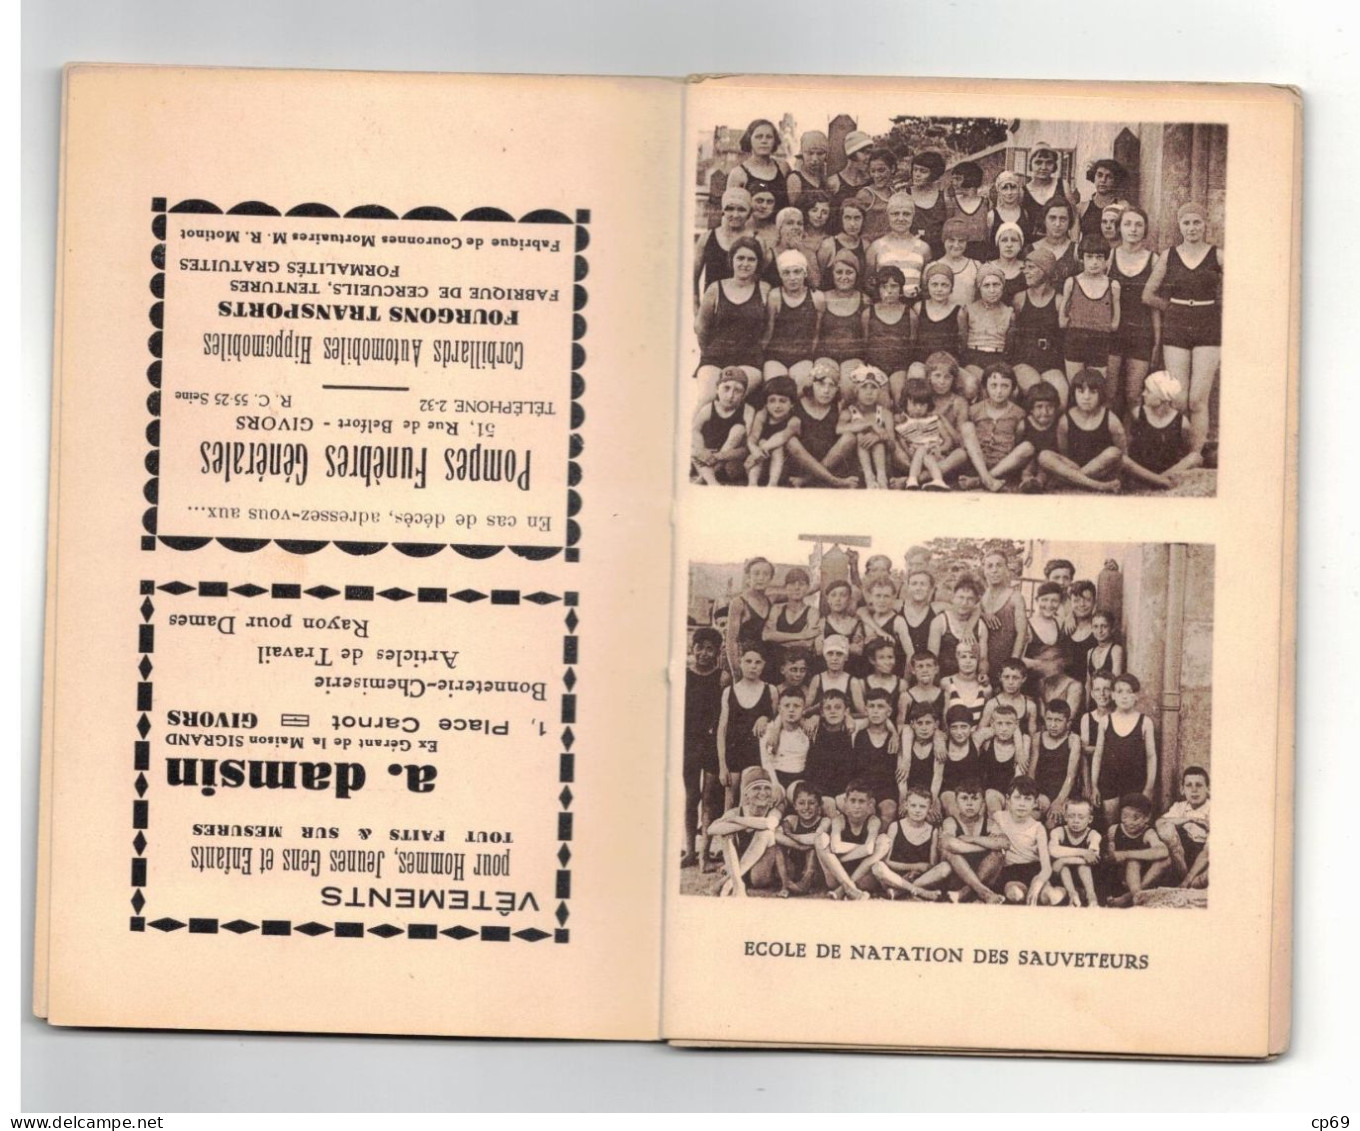 Souvenir de Givors Livret Sportif Saison 1932-33 Voir Photos Rugby Natation Water Polo Basket Cyclisme Pompiers TB.Etat